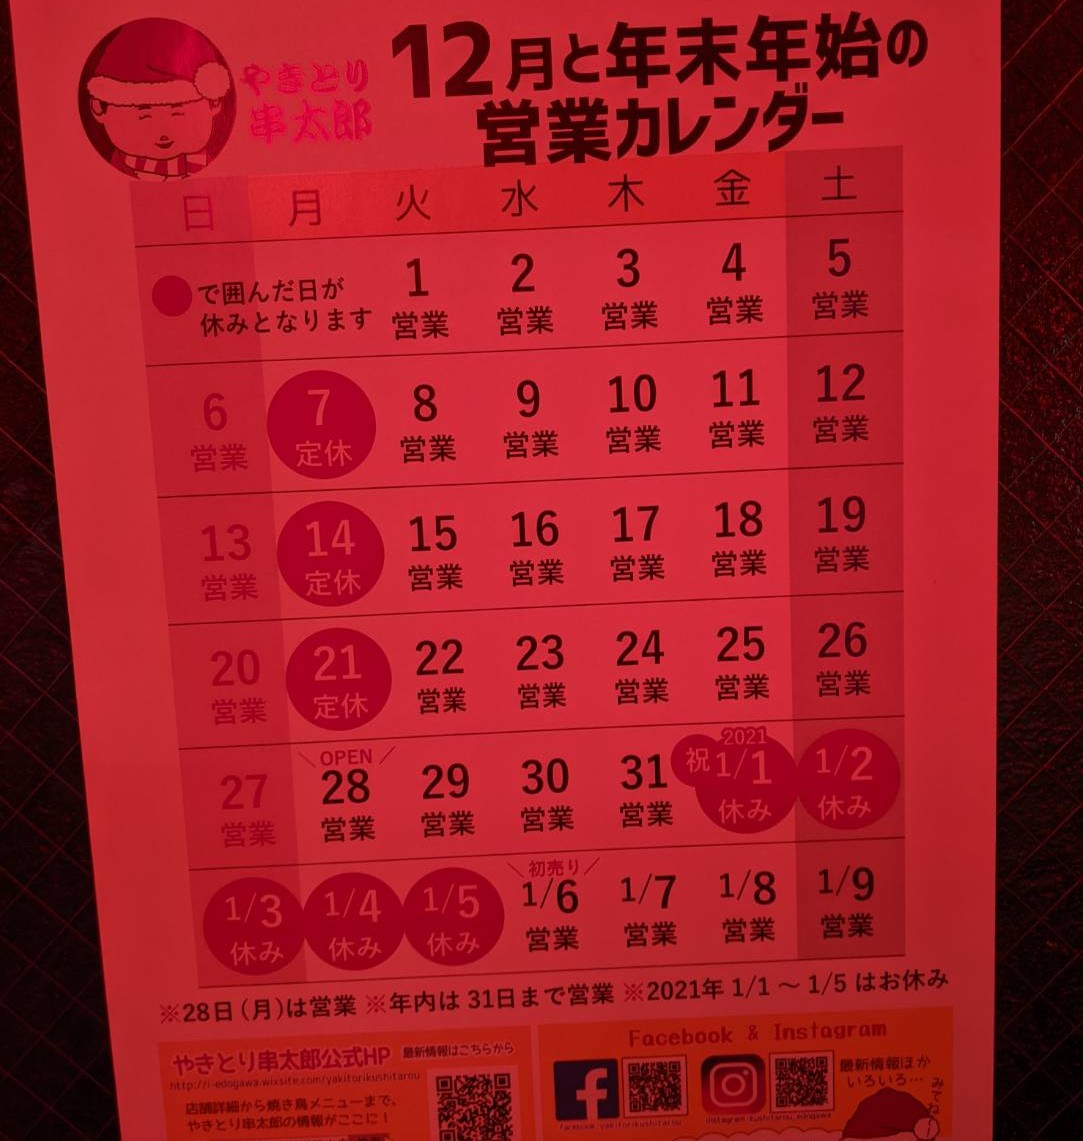 『串太郎』営業カレンダー